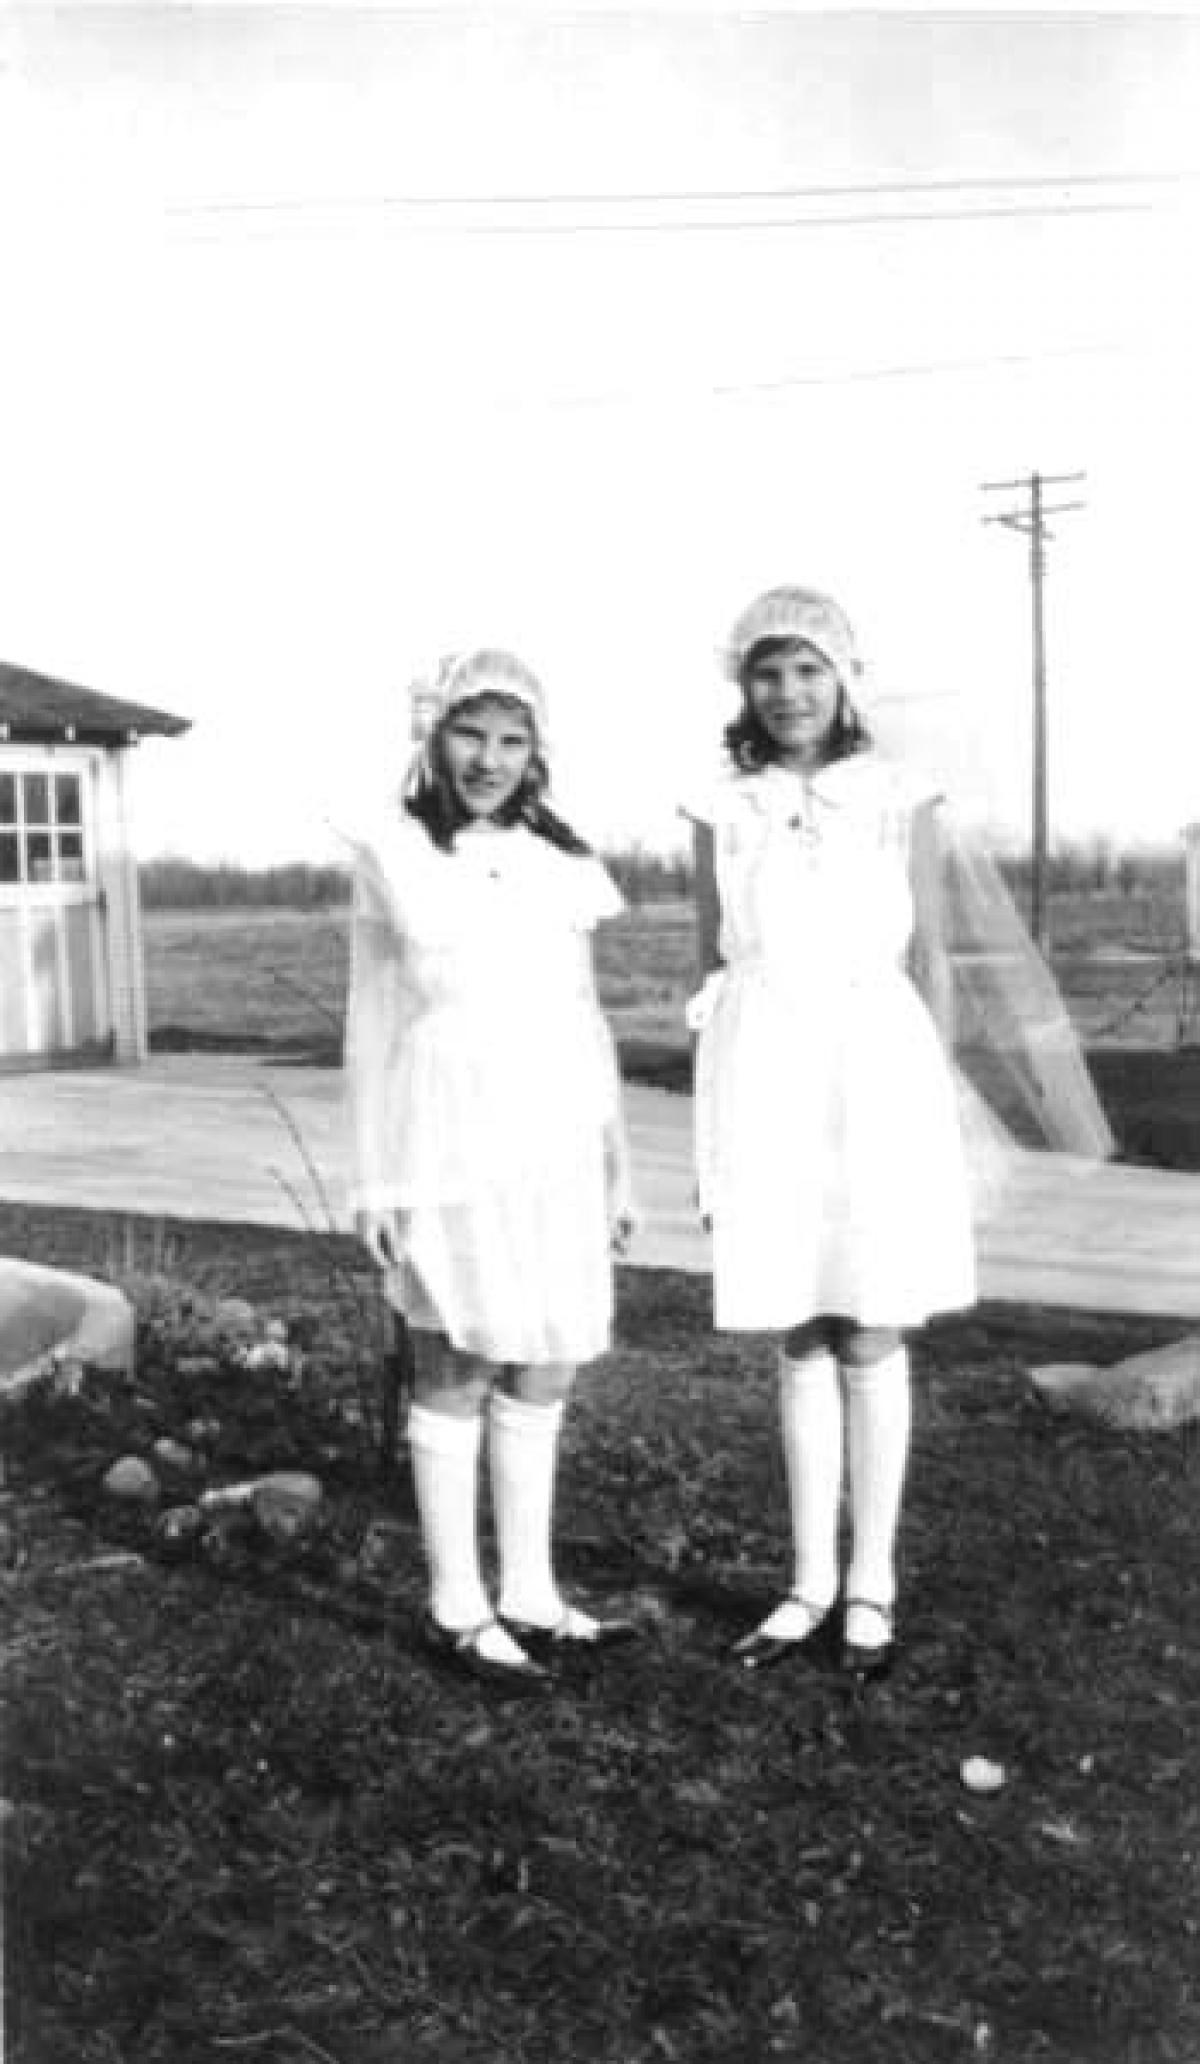 Denise and Juliette DePorre, 1686 Anita, spring 1932